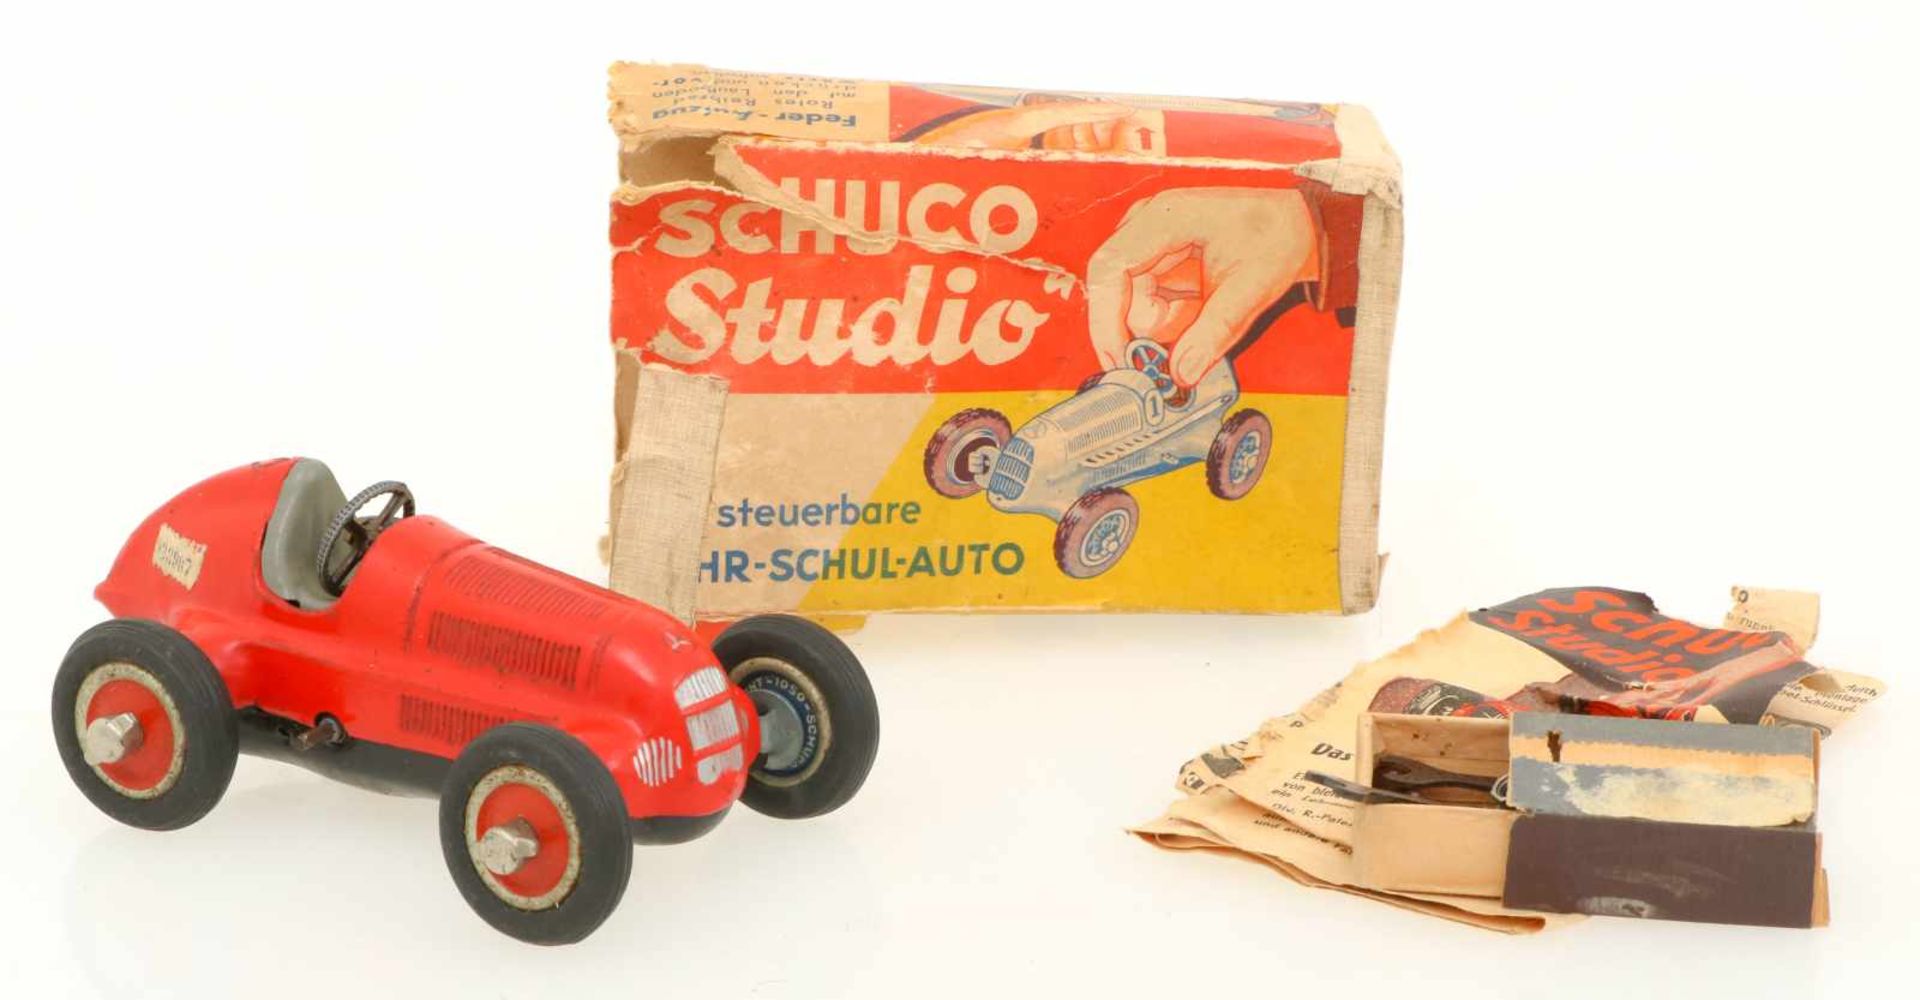 Schuco Studio 1050 racer.